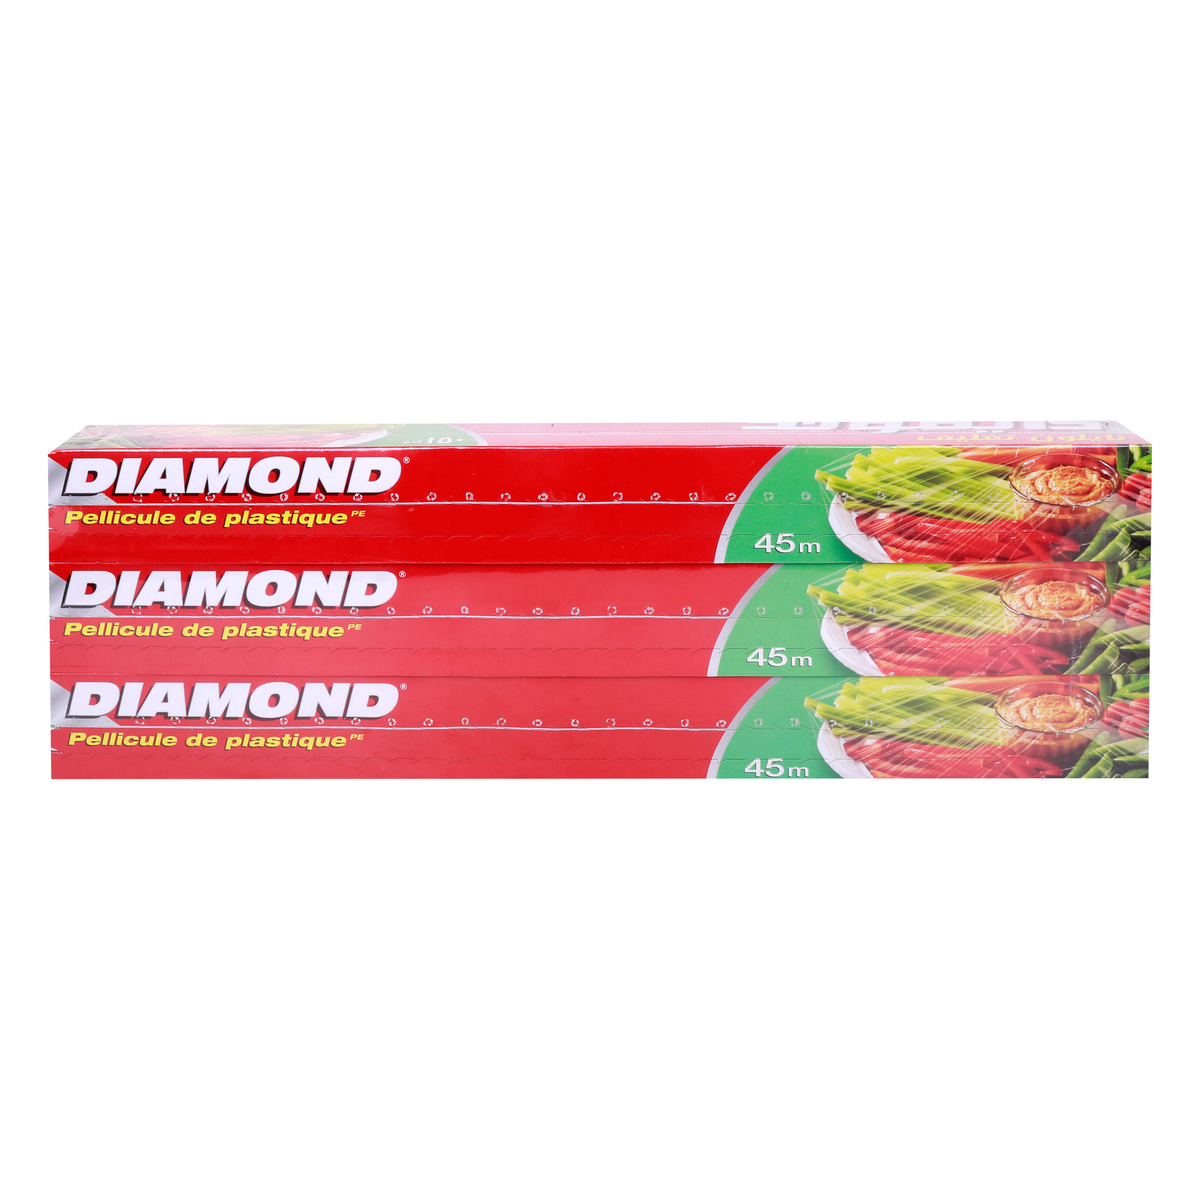 Diamond Cling Wrap, 150ft, 3 pcs